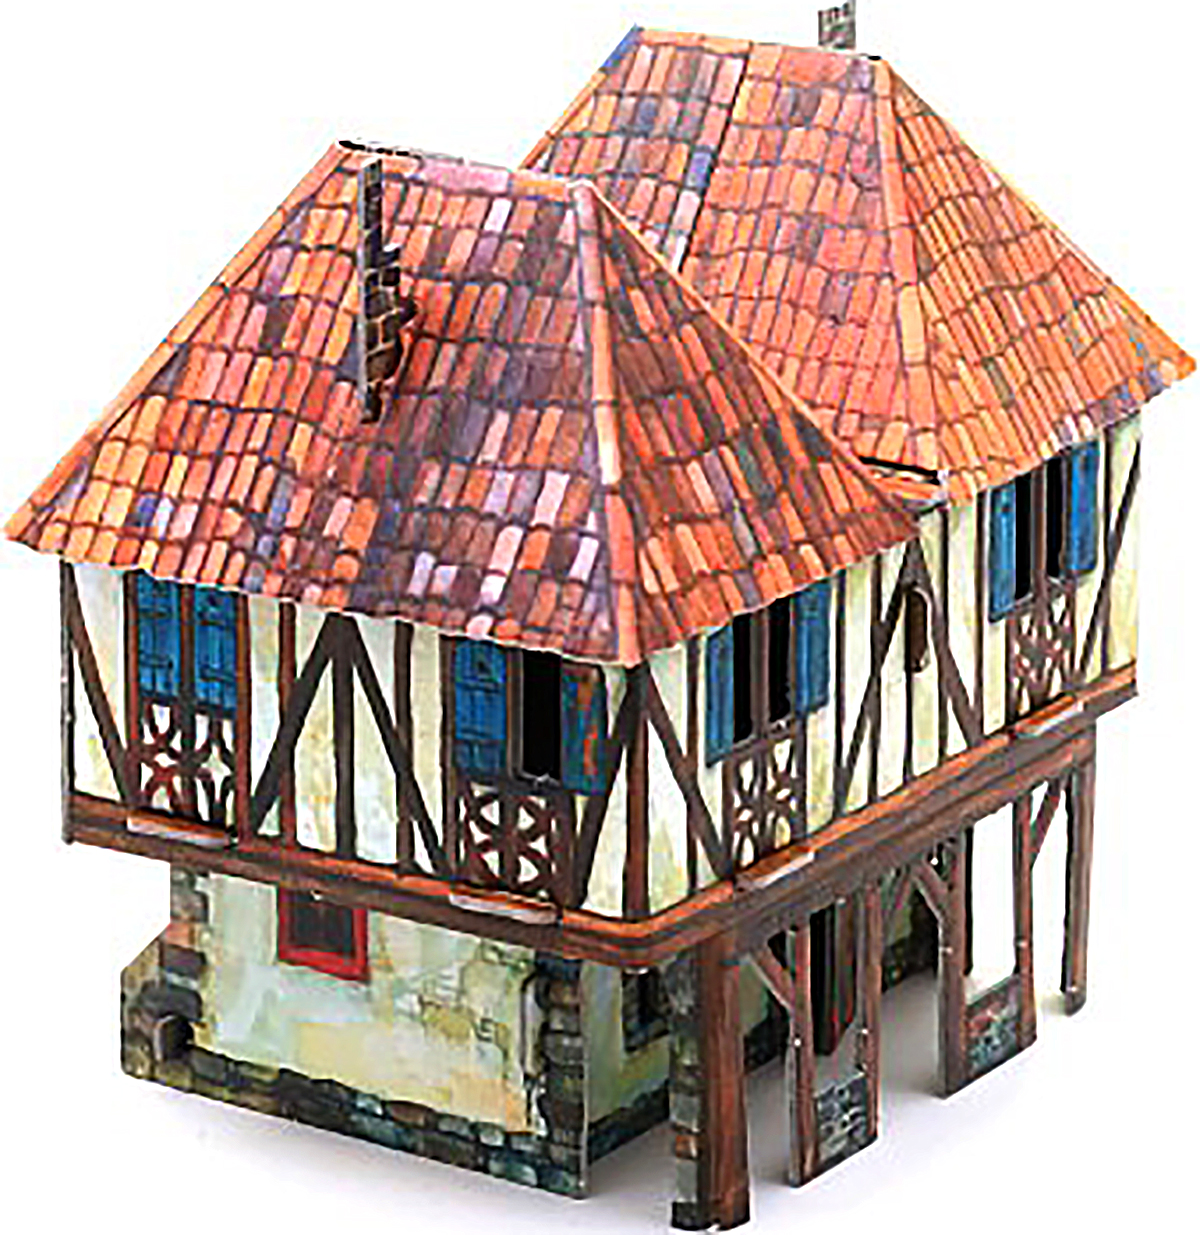 3D Puzzle KARTONMODELLBAU Papier Modell Geschenk Idee Spielzeug Bürgerhaus Neu